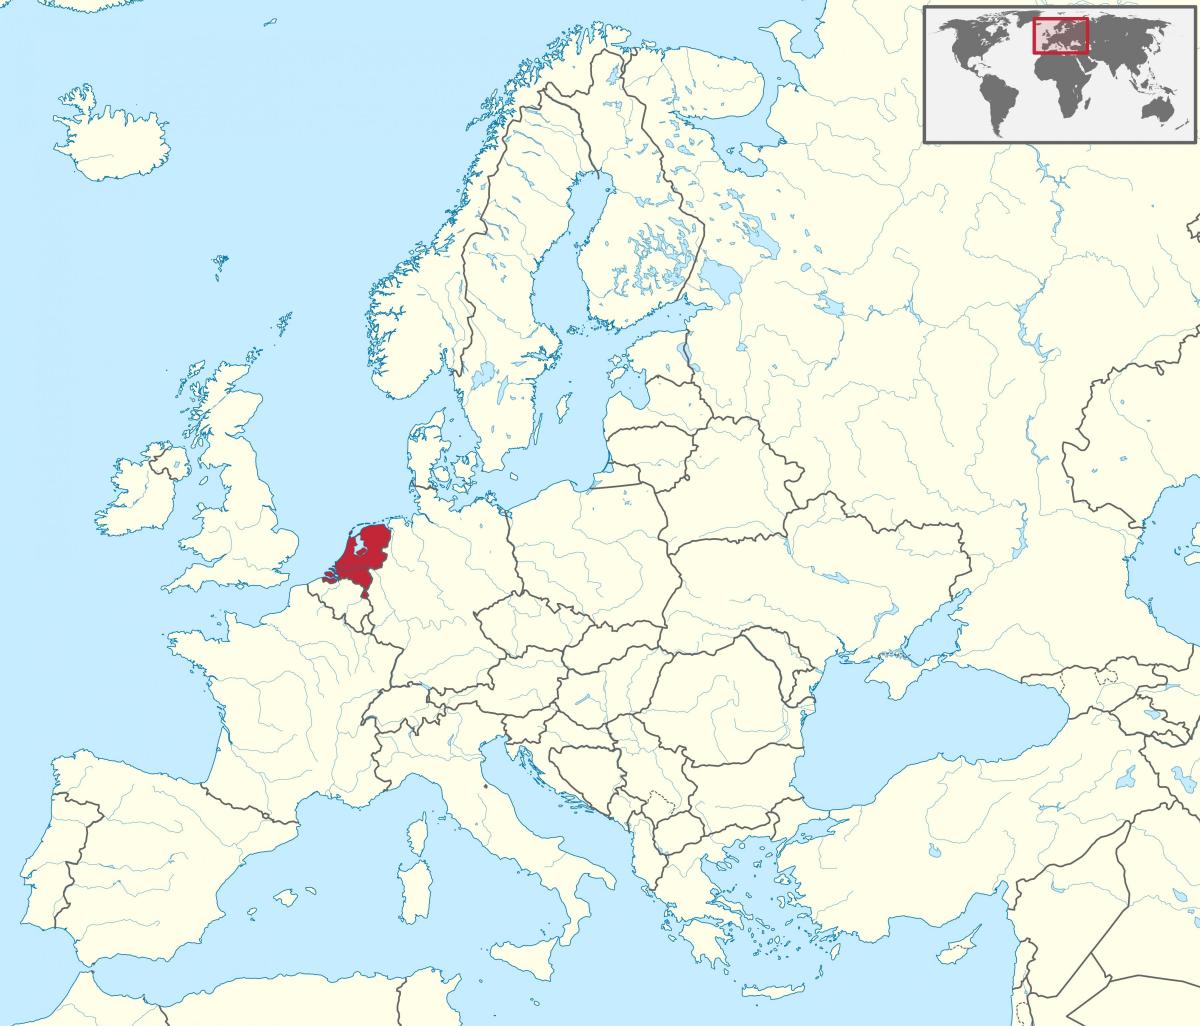 Ligging van Nederland op de Europa-kaart